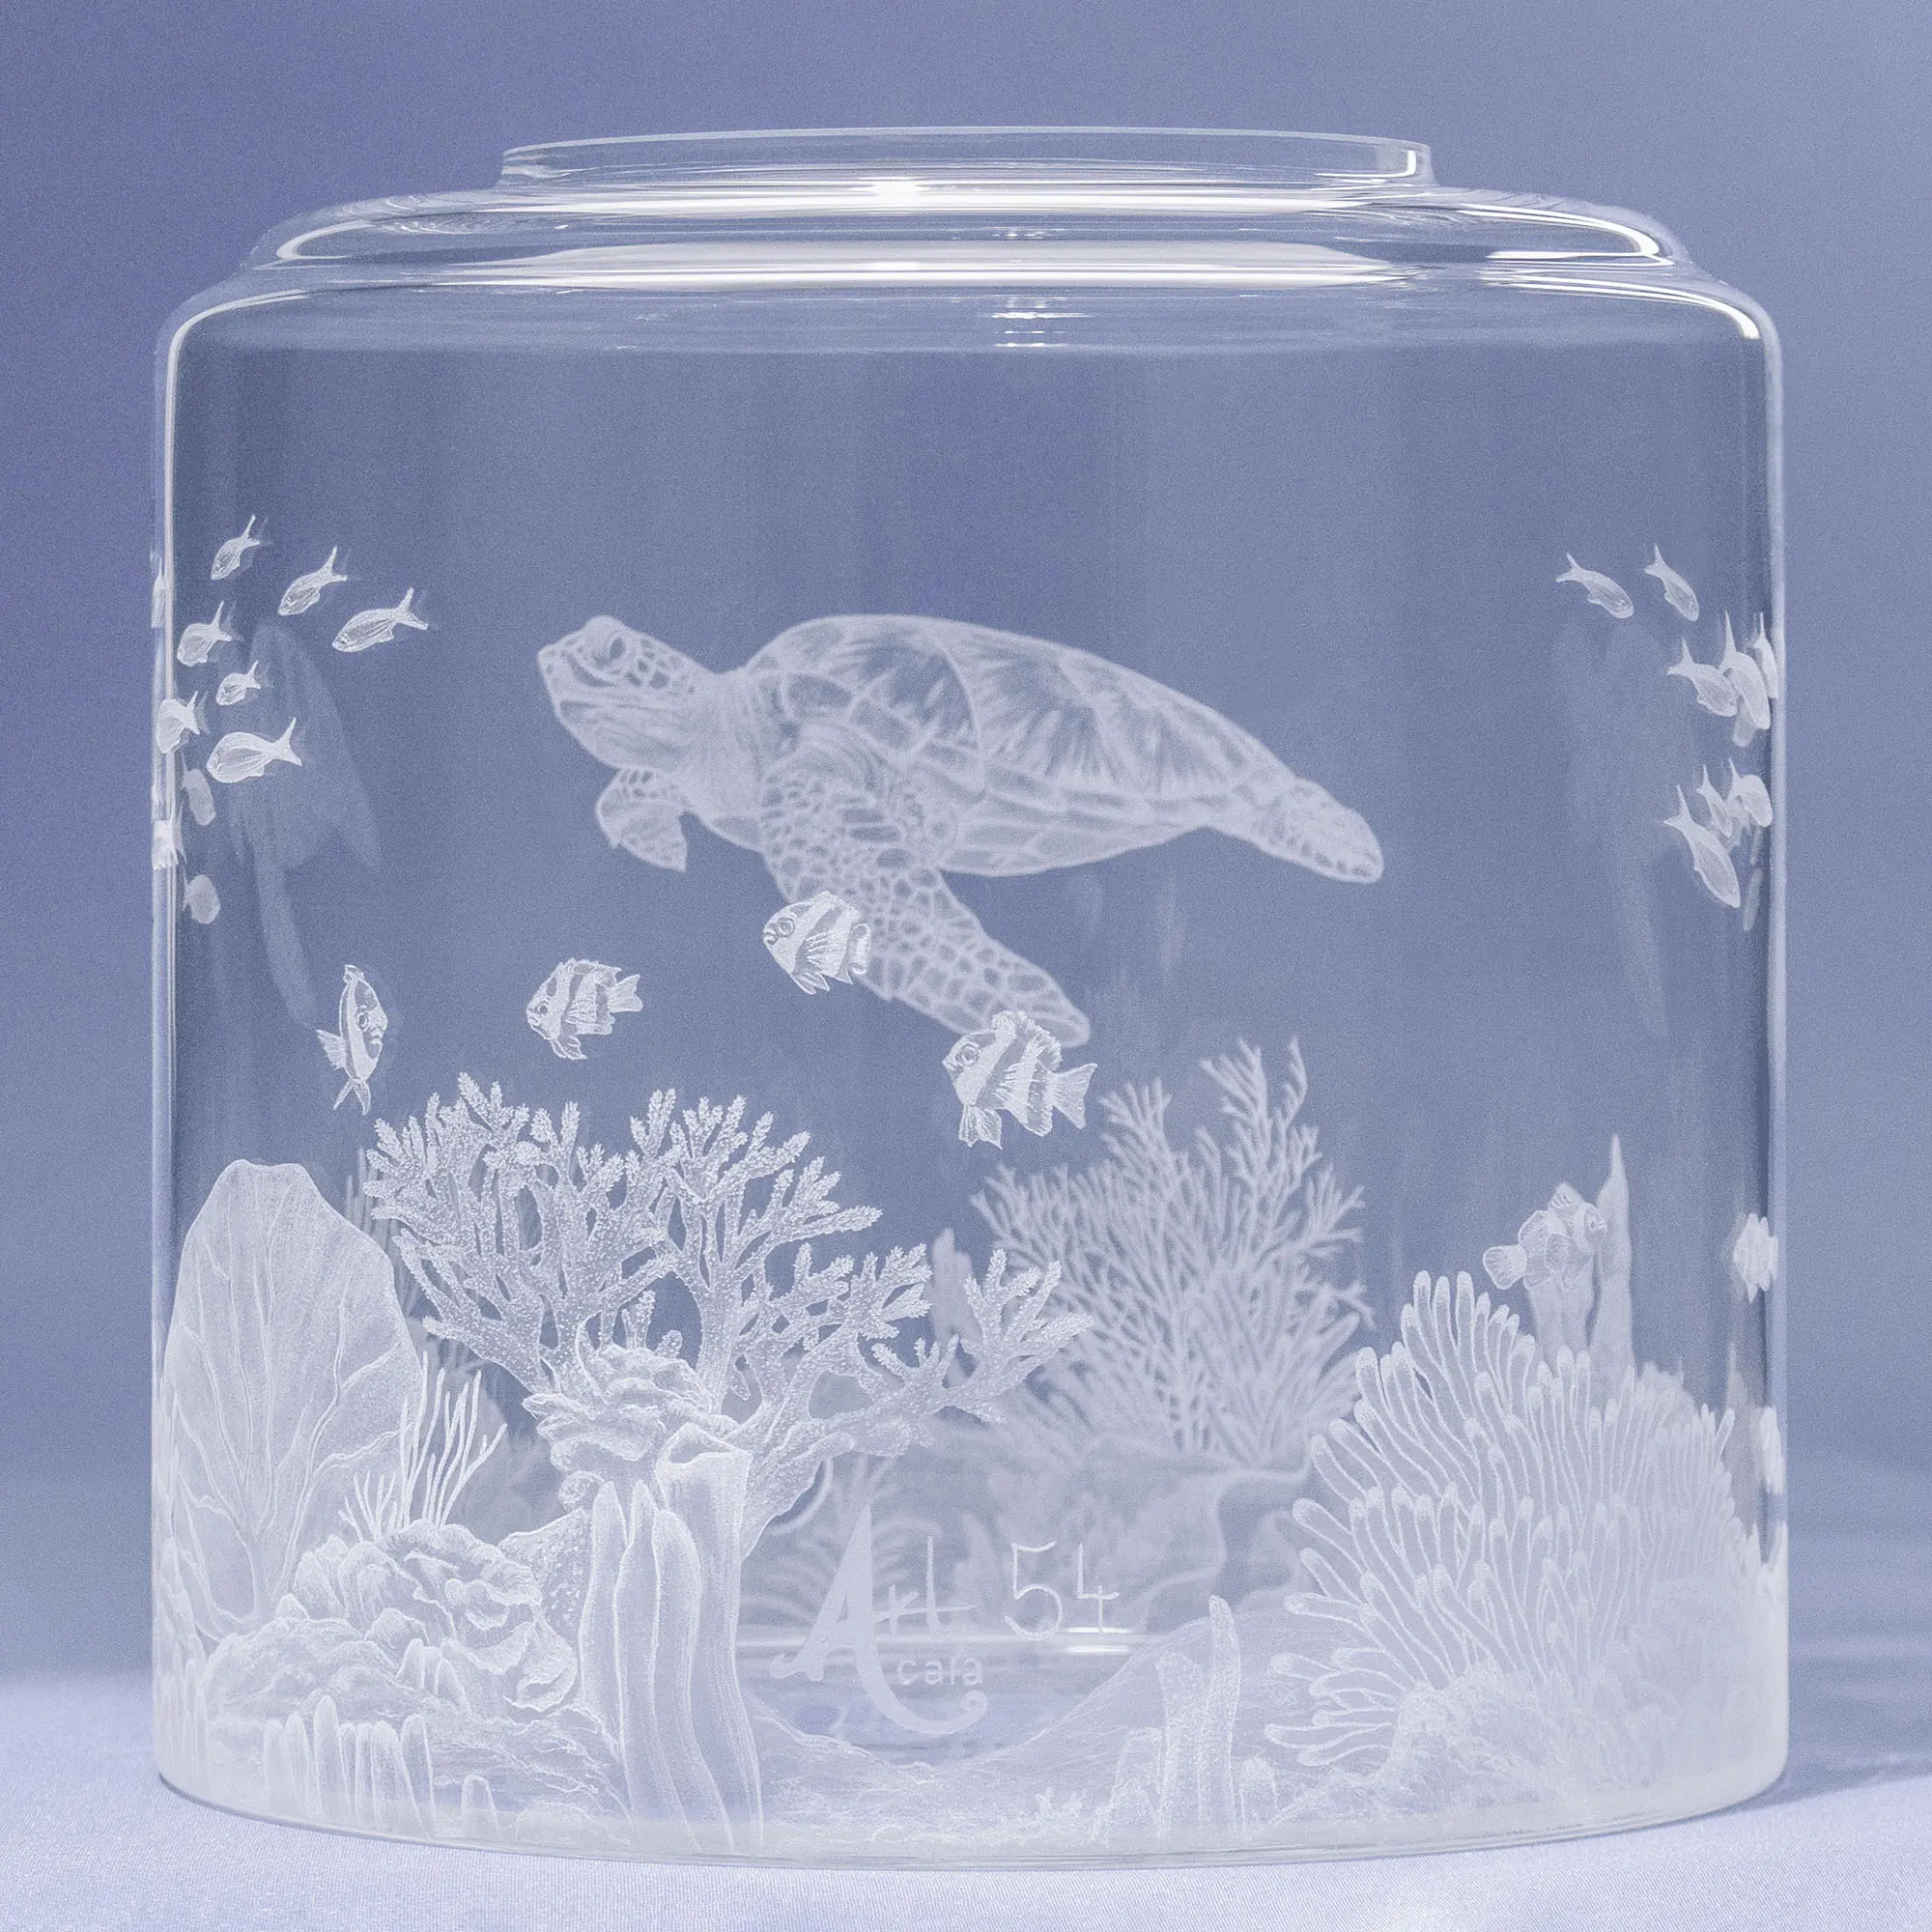 Auf dem Bild ist ein Wassertank für Acala Wasserfilter mit einer Handgravur die ein Riff mit Fischen,Korallen und einer schönen Schildkröte dargestellt wird,hinten links